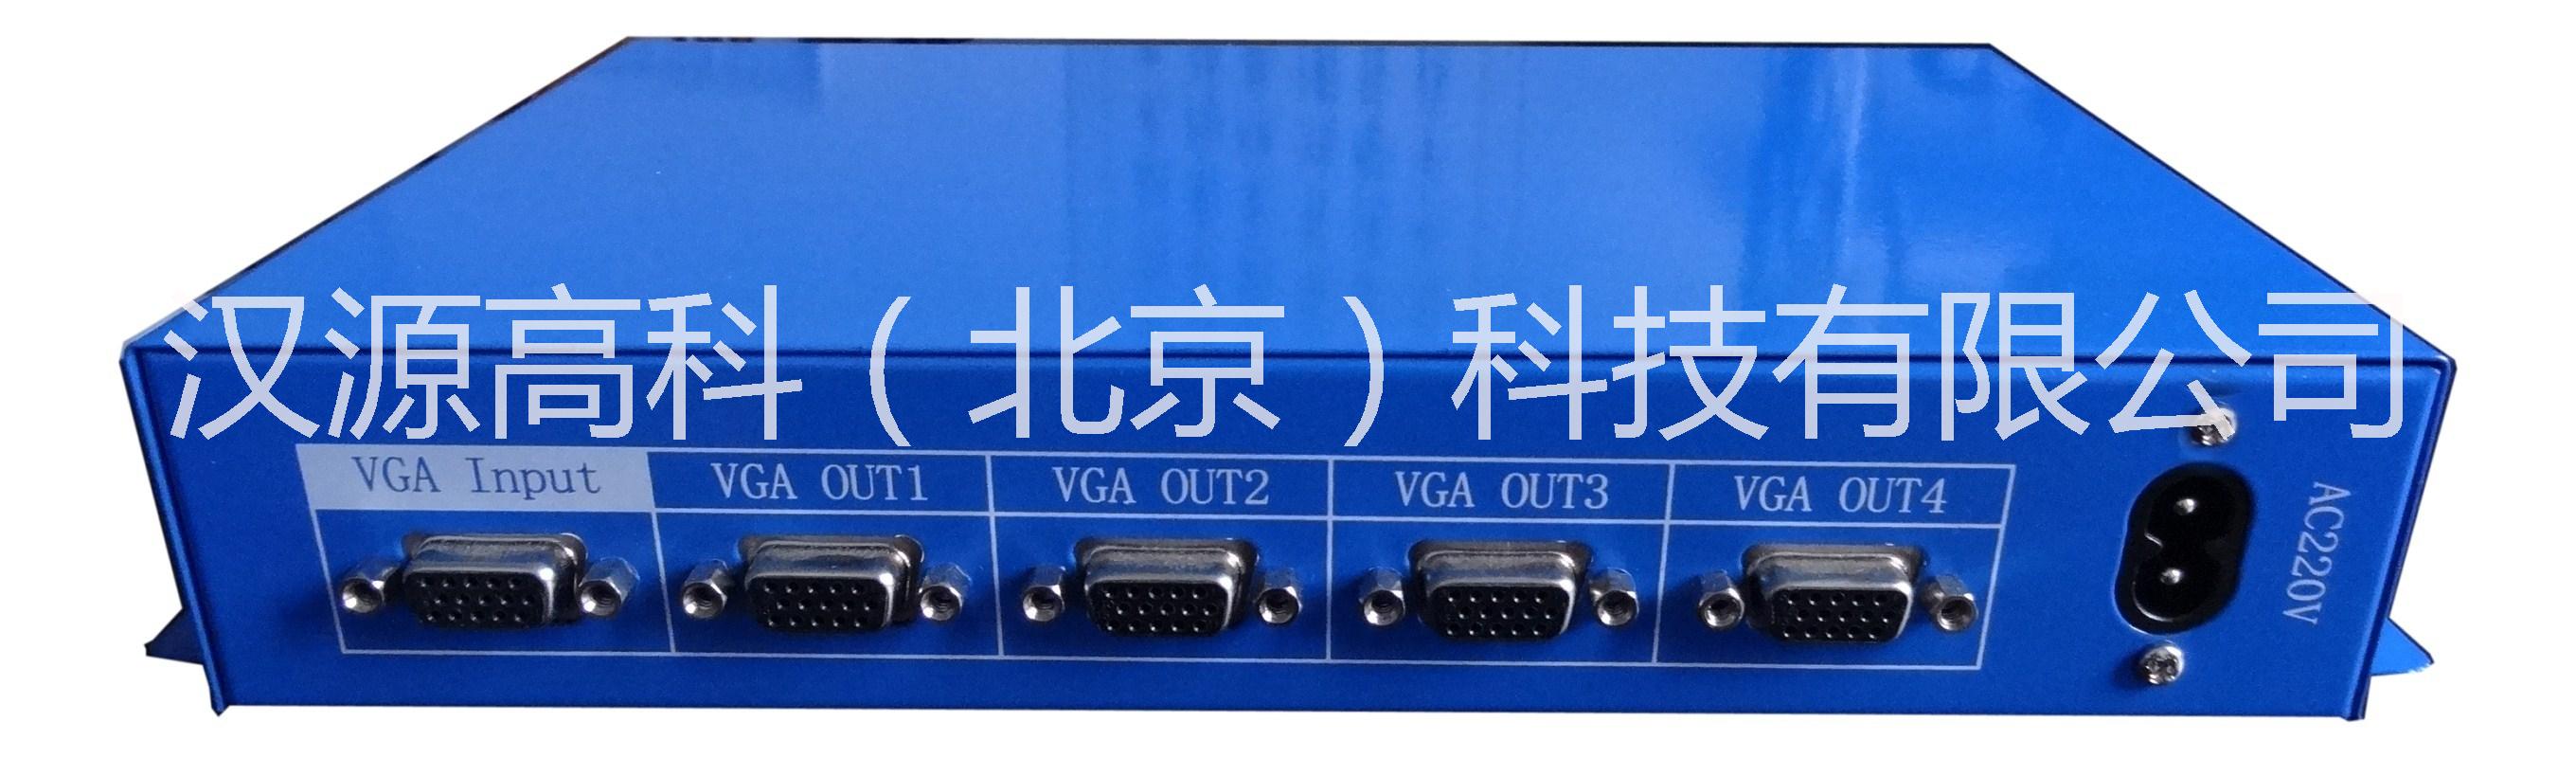 供应北京汉源高科VGA分配器